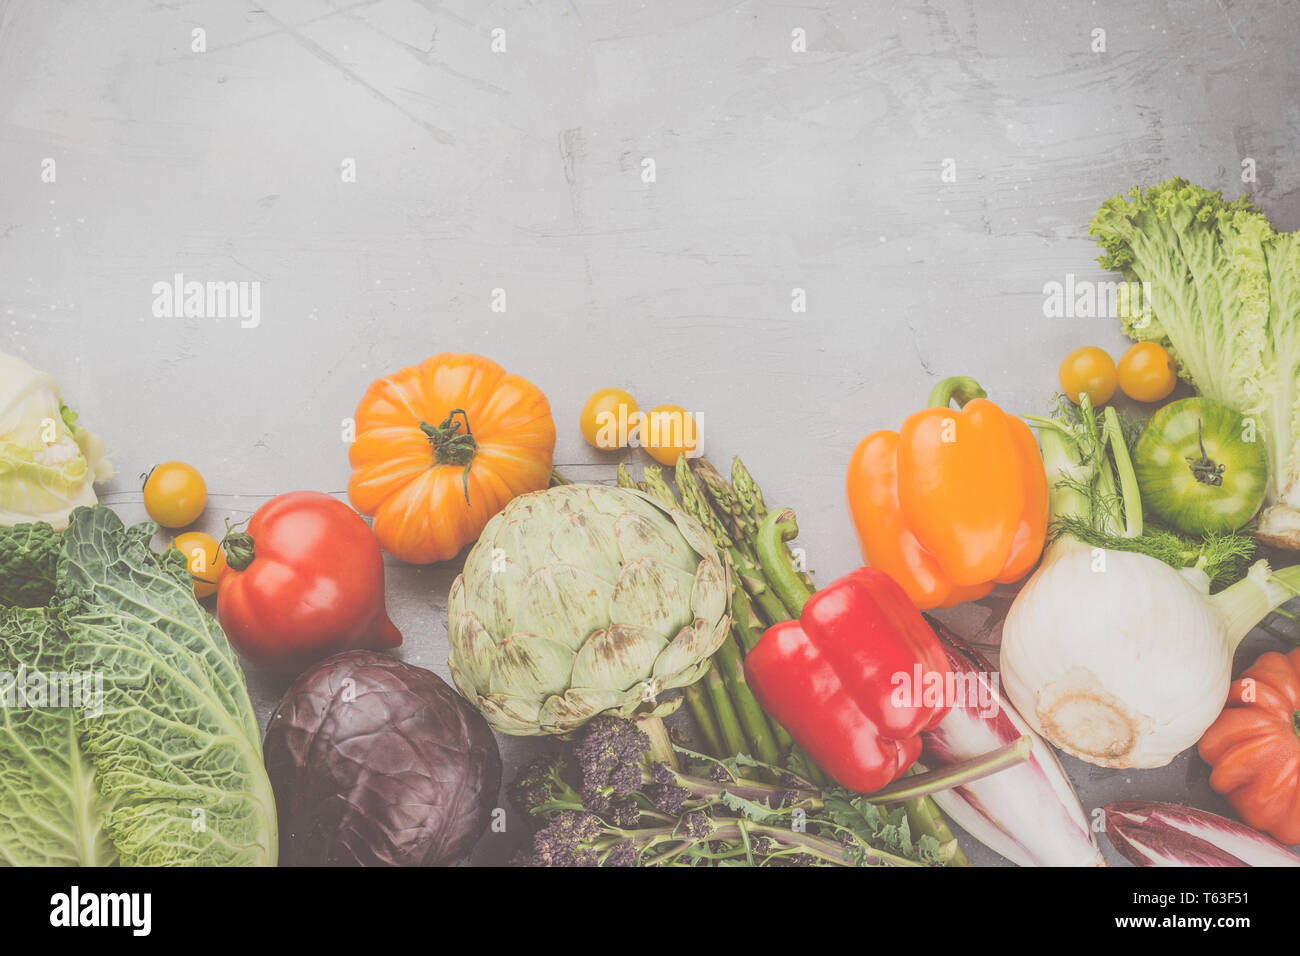 Frisches rohes Gemüse, Kohl Karotten Pfeffer Fenchel Broccoli Spargel Tomaten Salat artichocke, auf Grau konkreten Hintergrund, Ansicht von oben, Kopieren, s Stockfoto